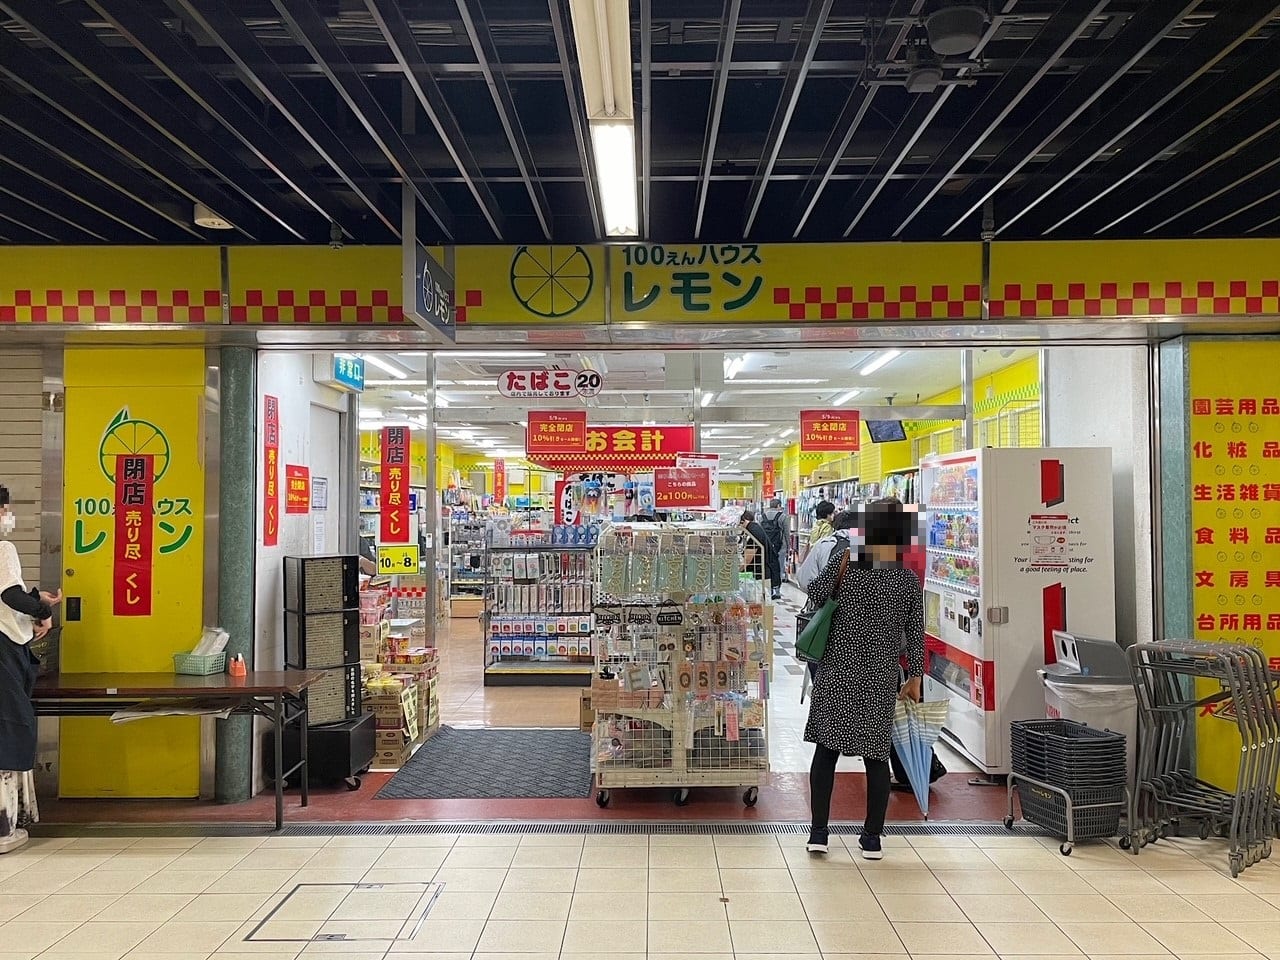 100円ハウスレモン静岡駅前店が６月に閉店するそうです